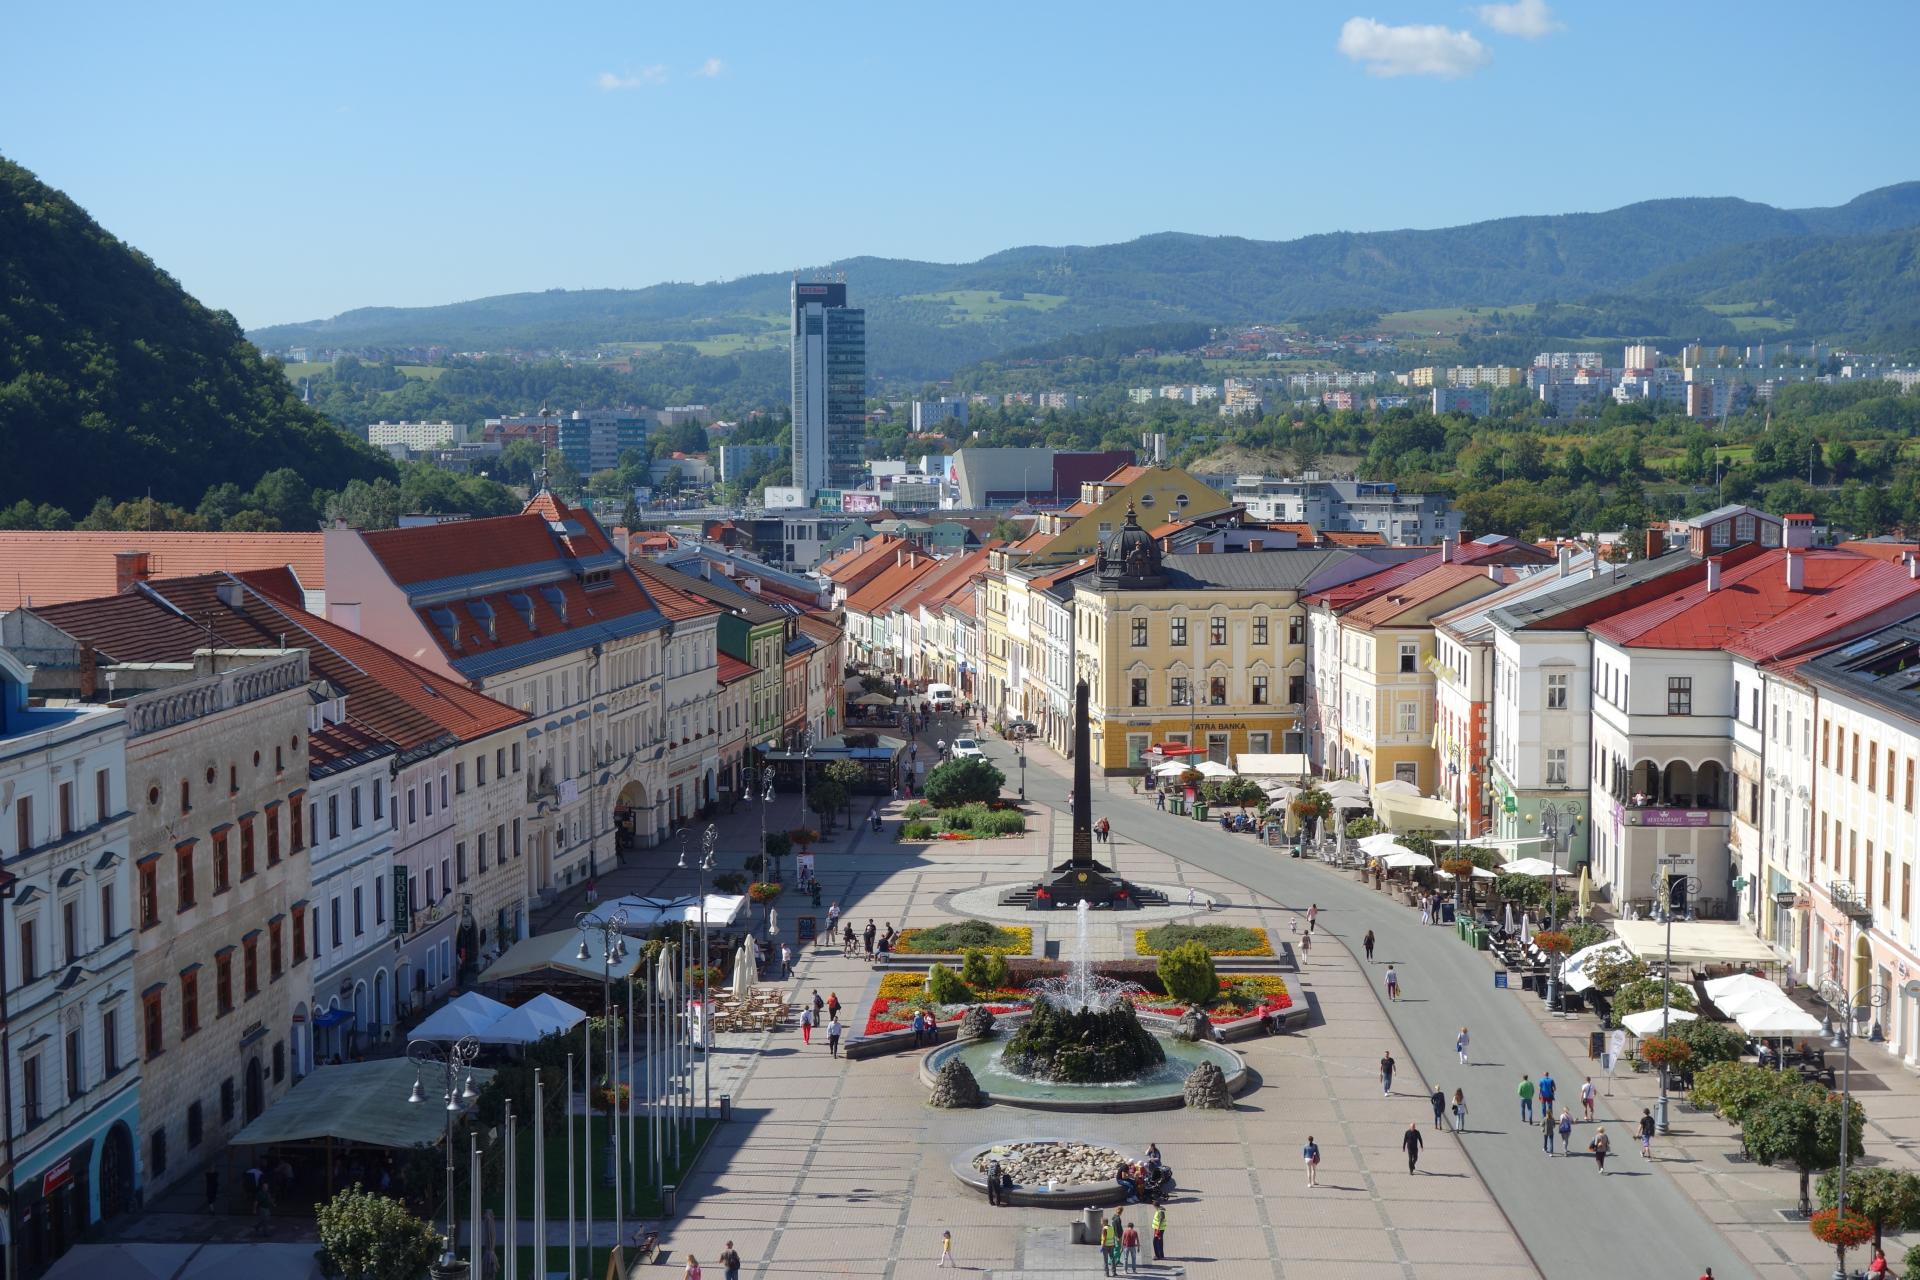 Veľká otočka v Bratislave: novostavby prudko zlacneli. Výrazný prepad čaká aj zvyšok Slovenska, tvrdí expert